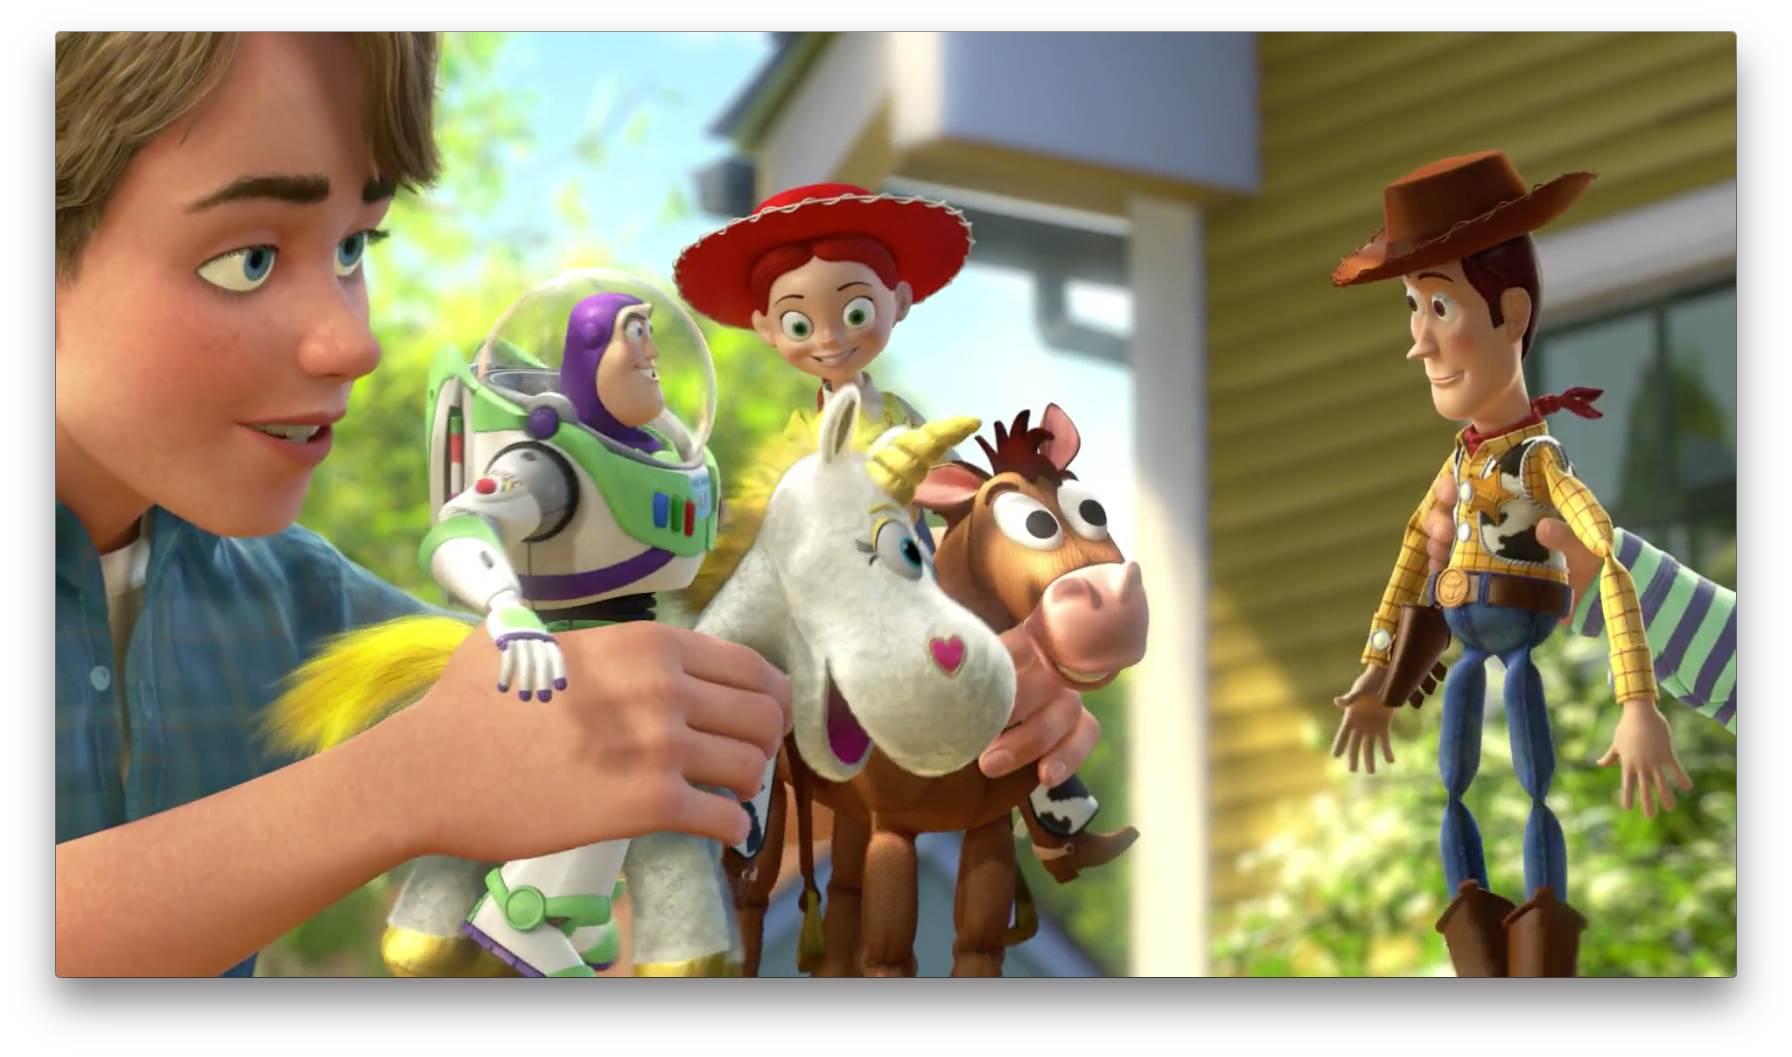 Toy Story 3: Final Scene Breakdown, by Brooks Reynolds